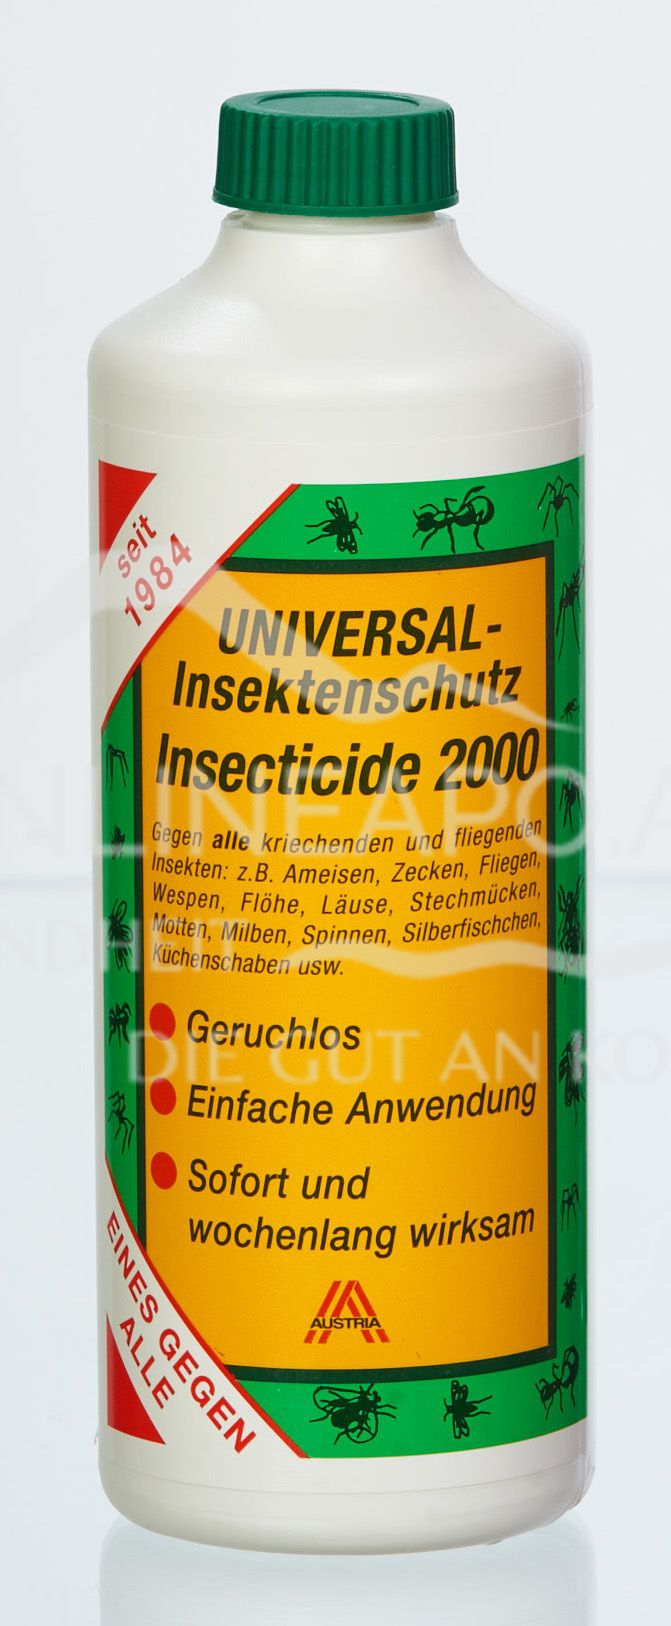 Universal-Insektenschutz Insecticide 2000